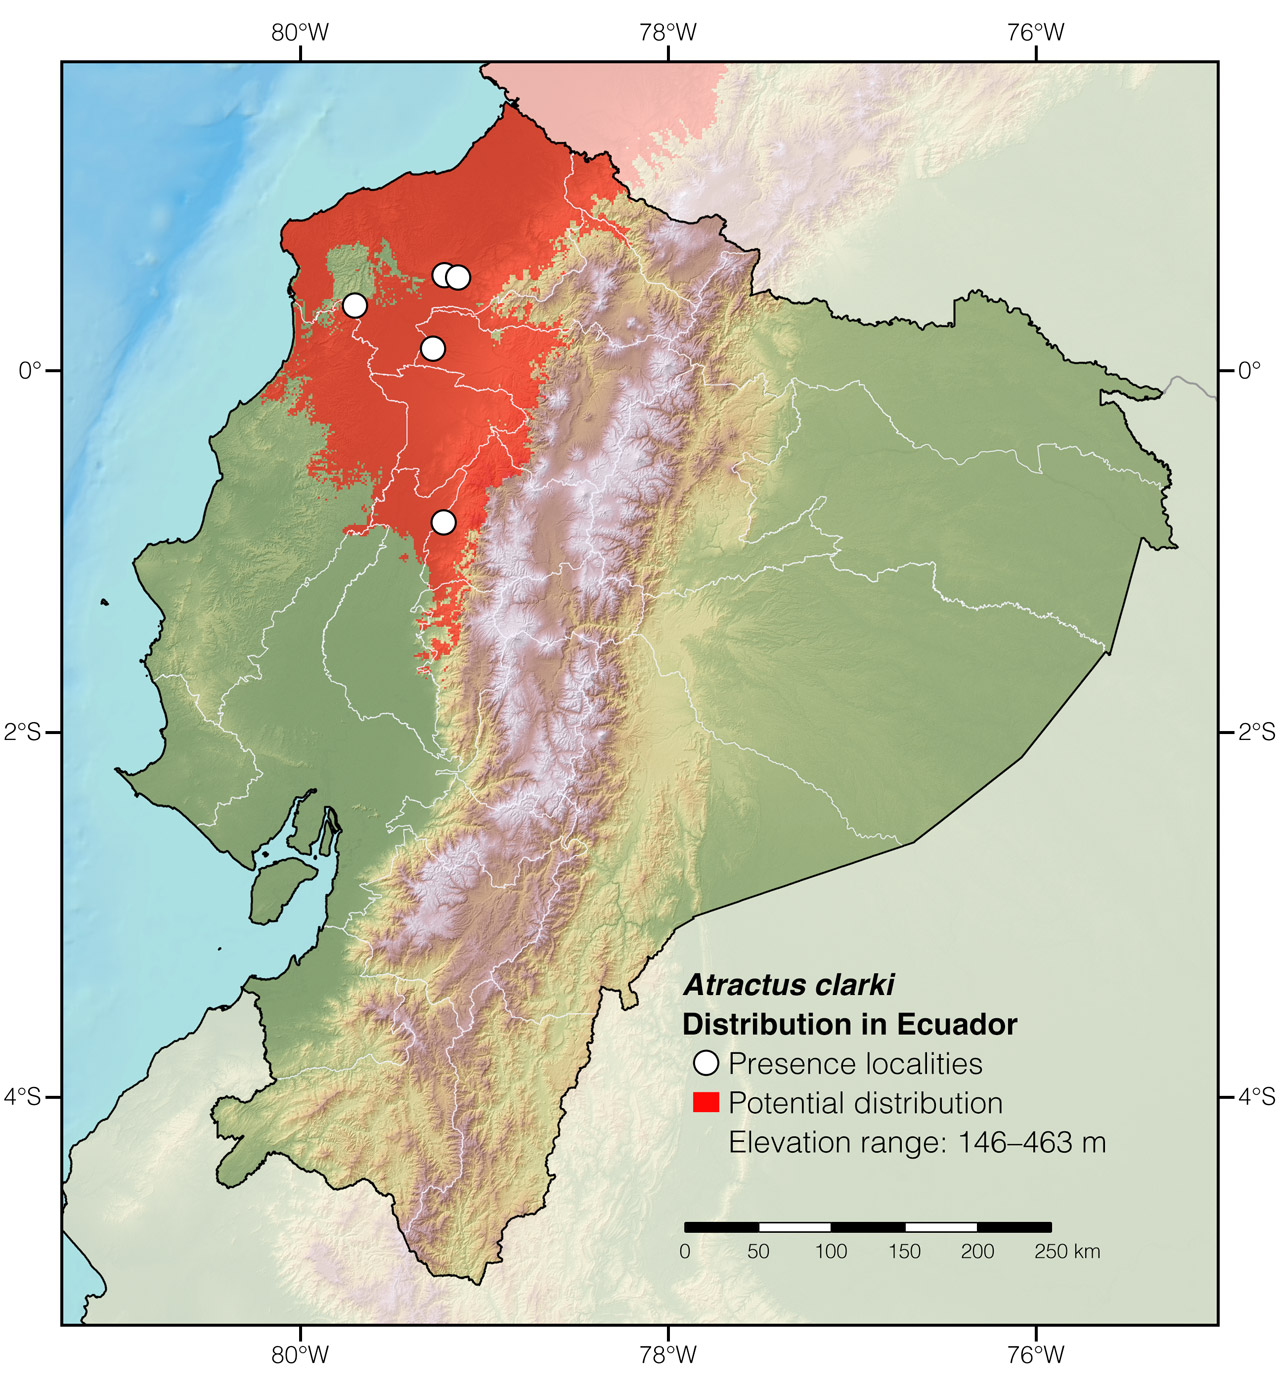 Distribution of Atractus clarki in Ecuador